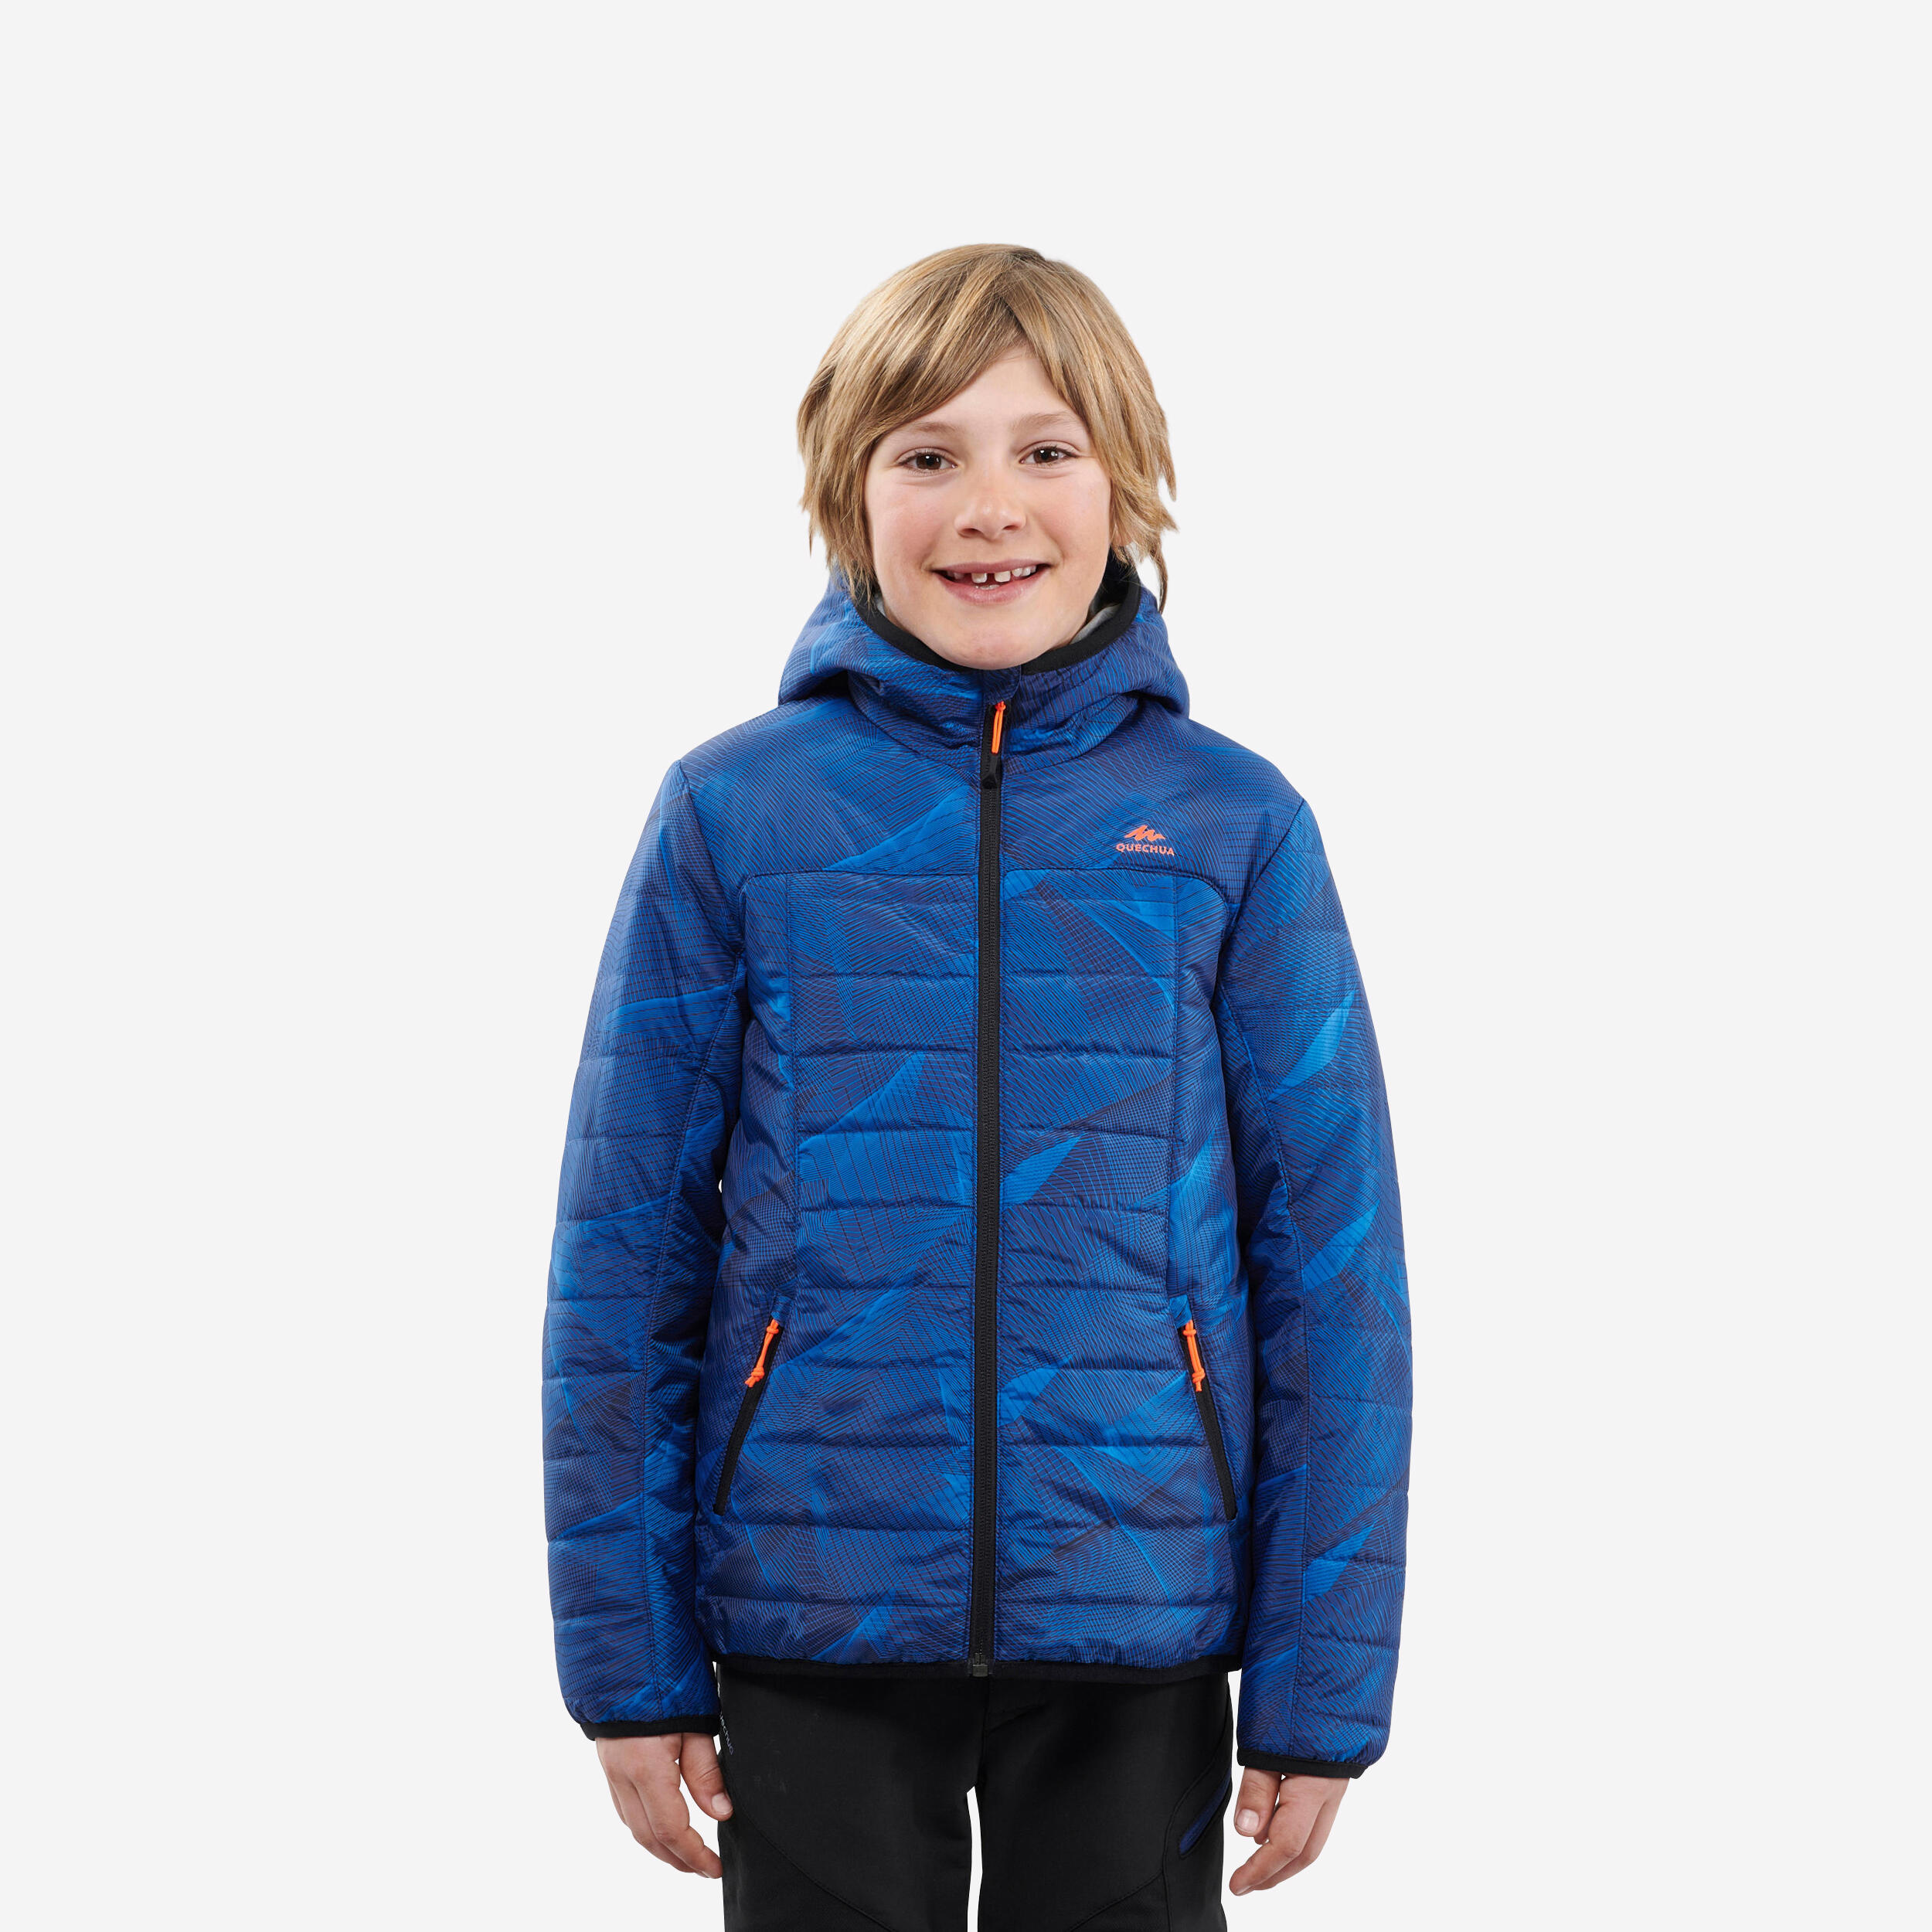 Kids' Padded Winter Jacket - MH 500 Blue - Blue - Quechua - Decathlon